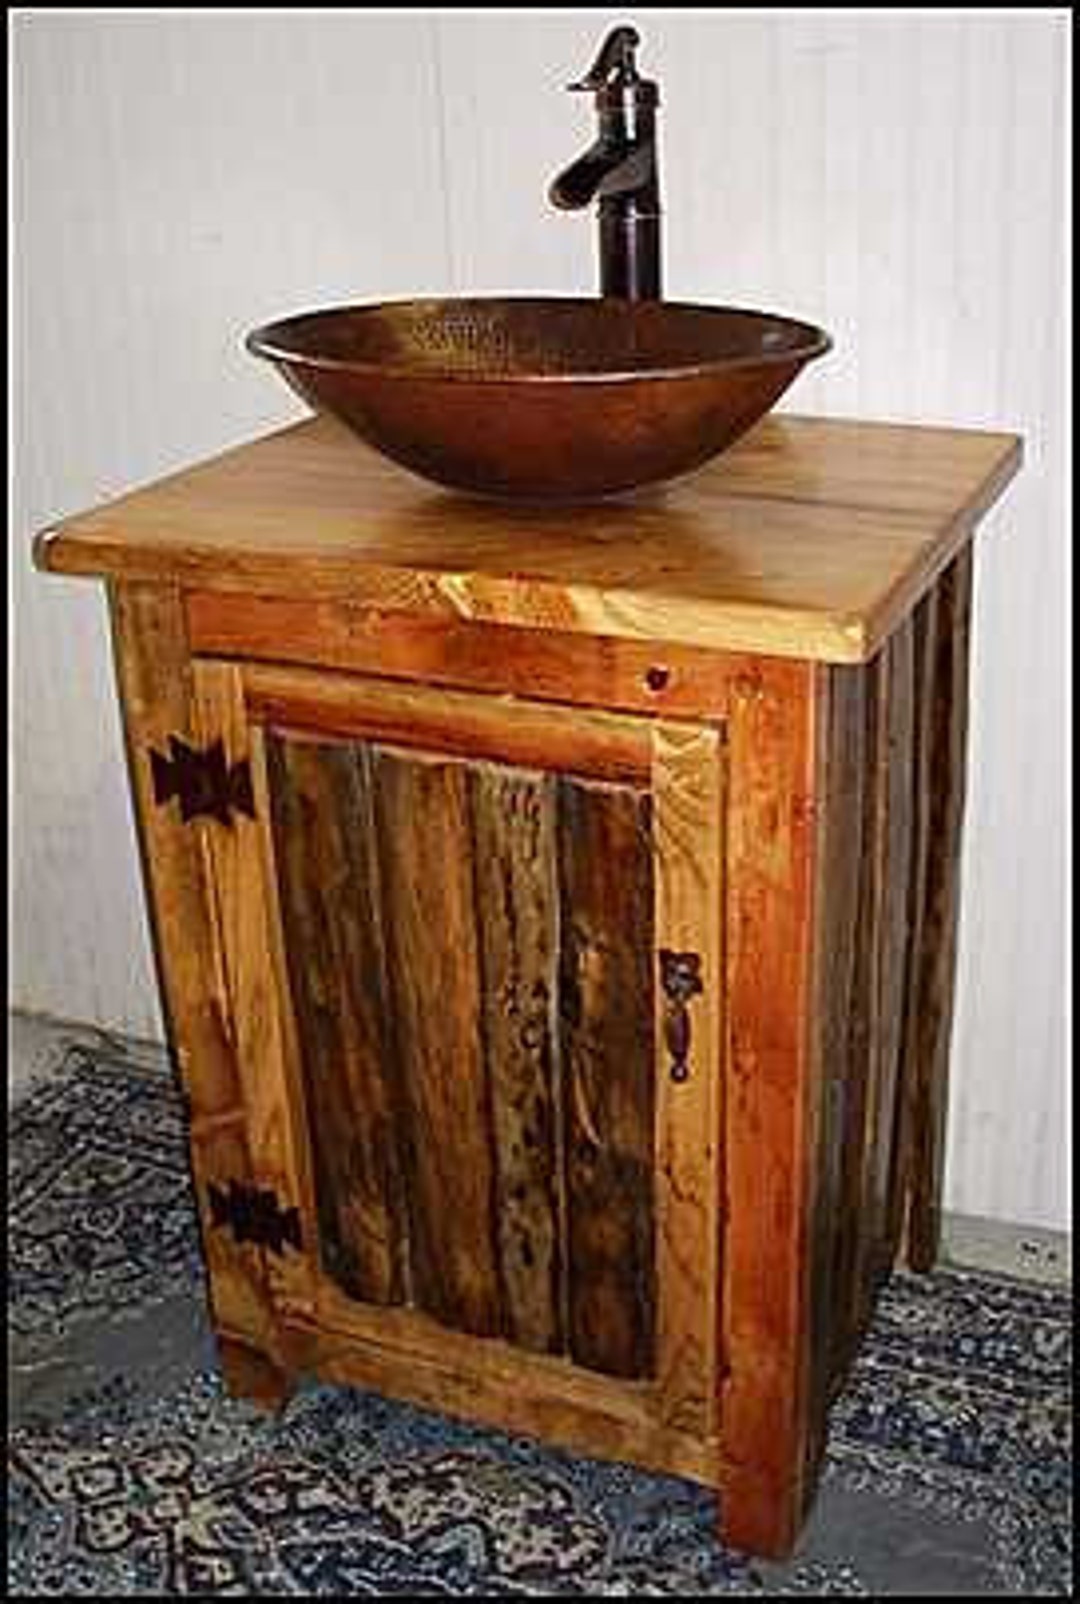 Cabinet around pedestal Sink  LumberJocks Woodworking Forum